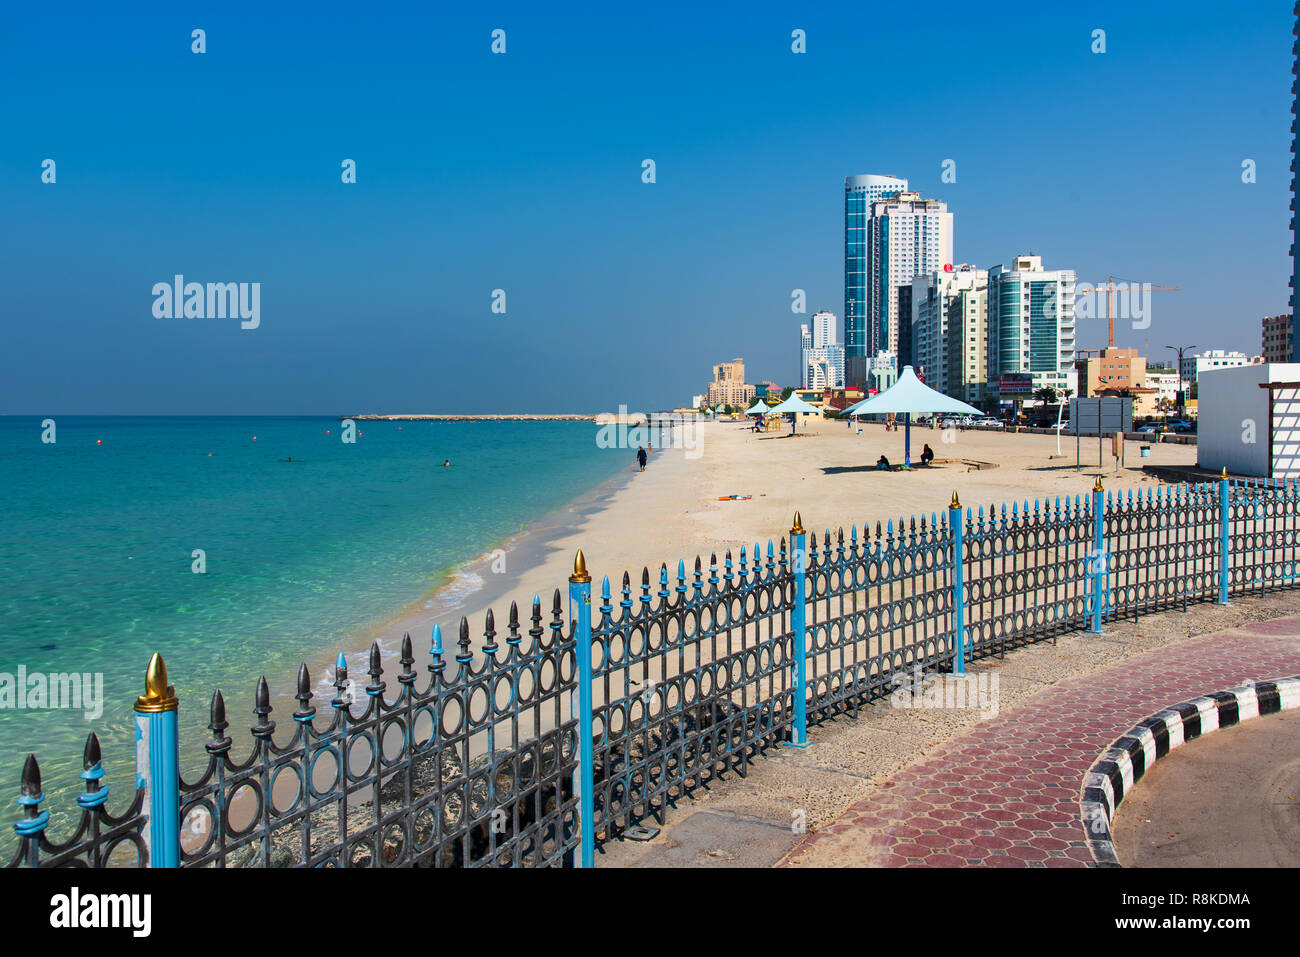 Ajman, Emiratos Árabes Unidos - Diciembre 6, 2018: Ajman Corniche playa hermosa costa en el área del centro de la ciudad rodeado por altos edificios residenciales Foto de stock